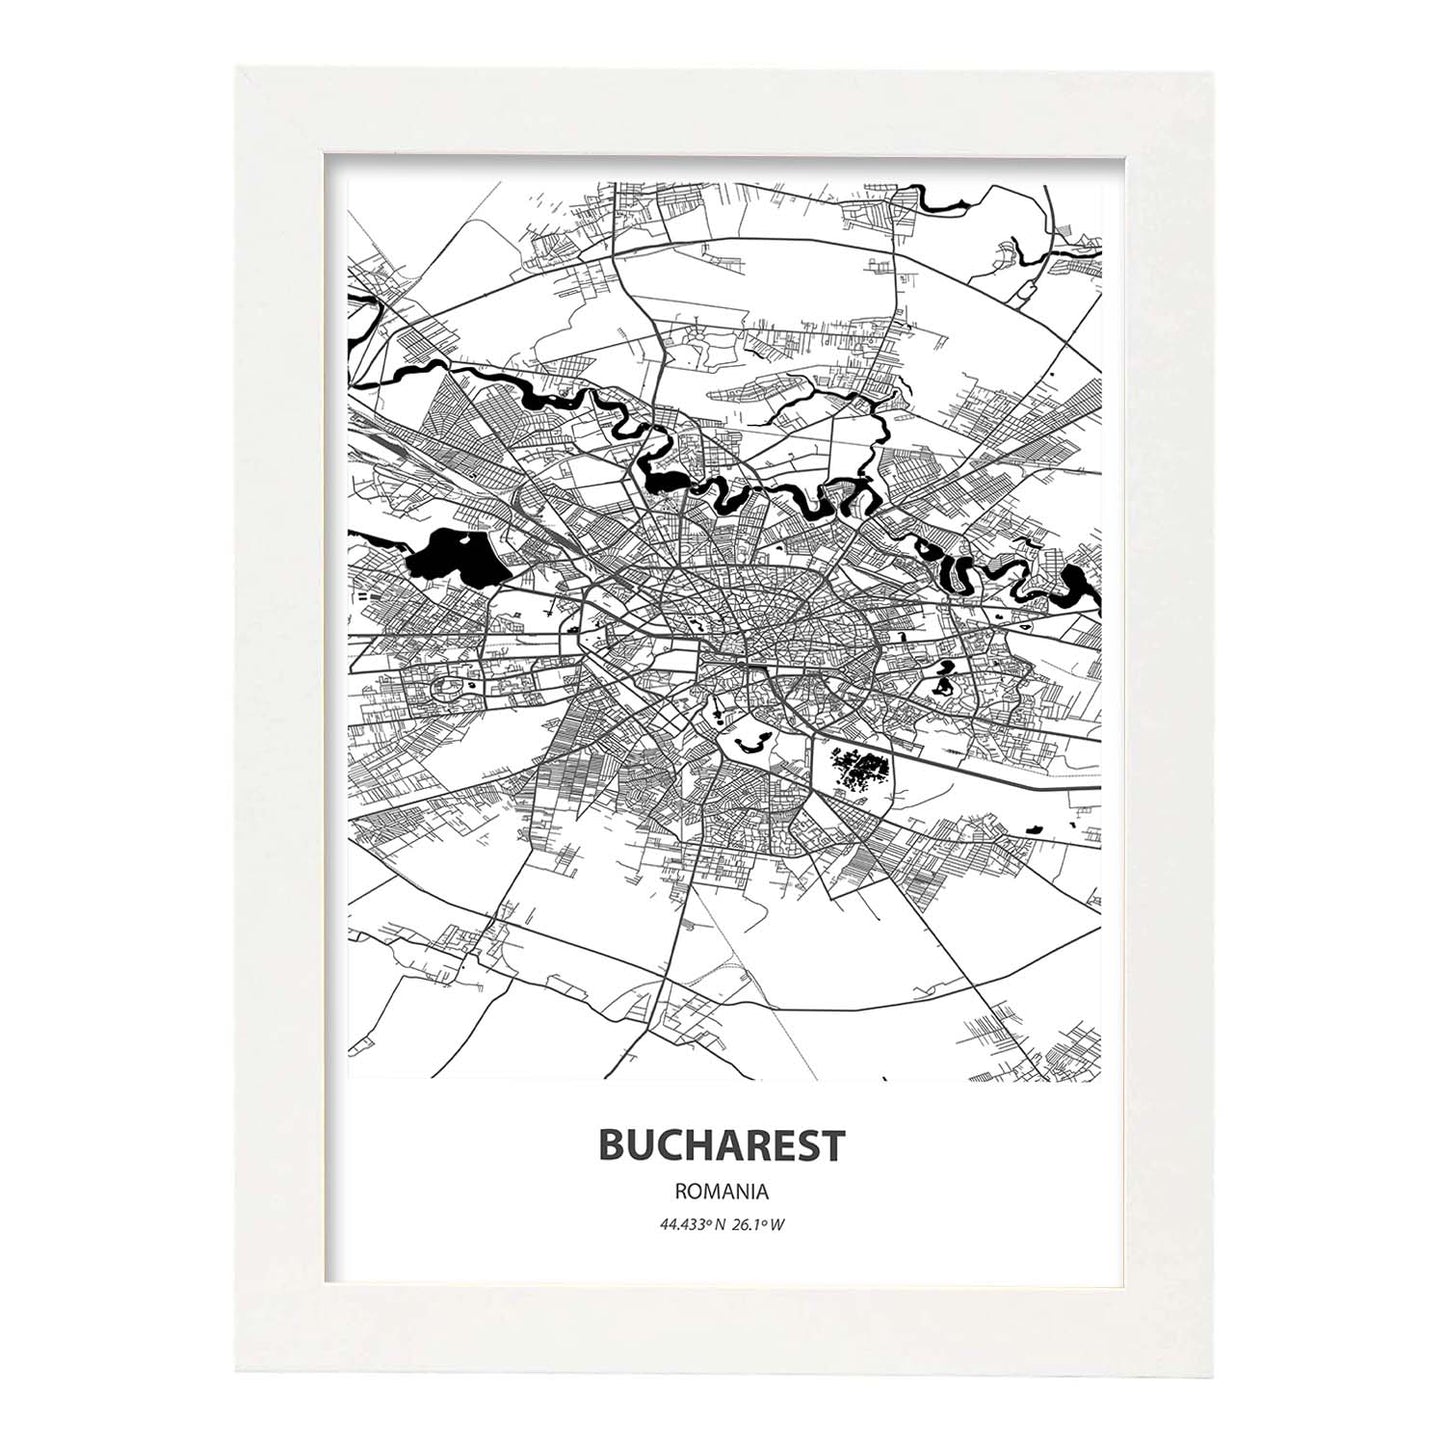 Poster con mapa de Bucharest - Rumania. Láminas de ciudades de Europa con mares y ríos en color negro.-Artwork-Nacnic-A4-Marco Blanco-Nacnic Estudio SL